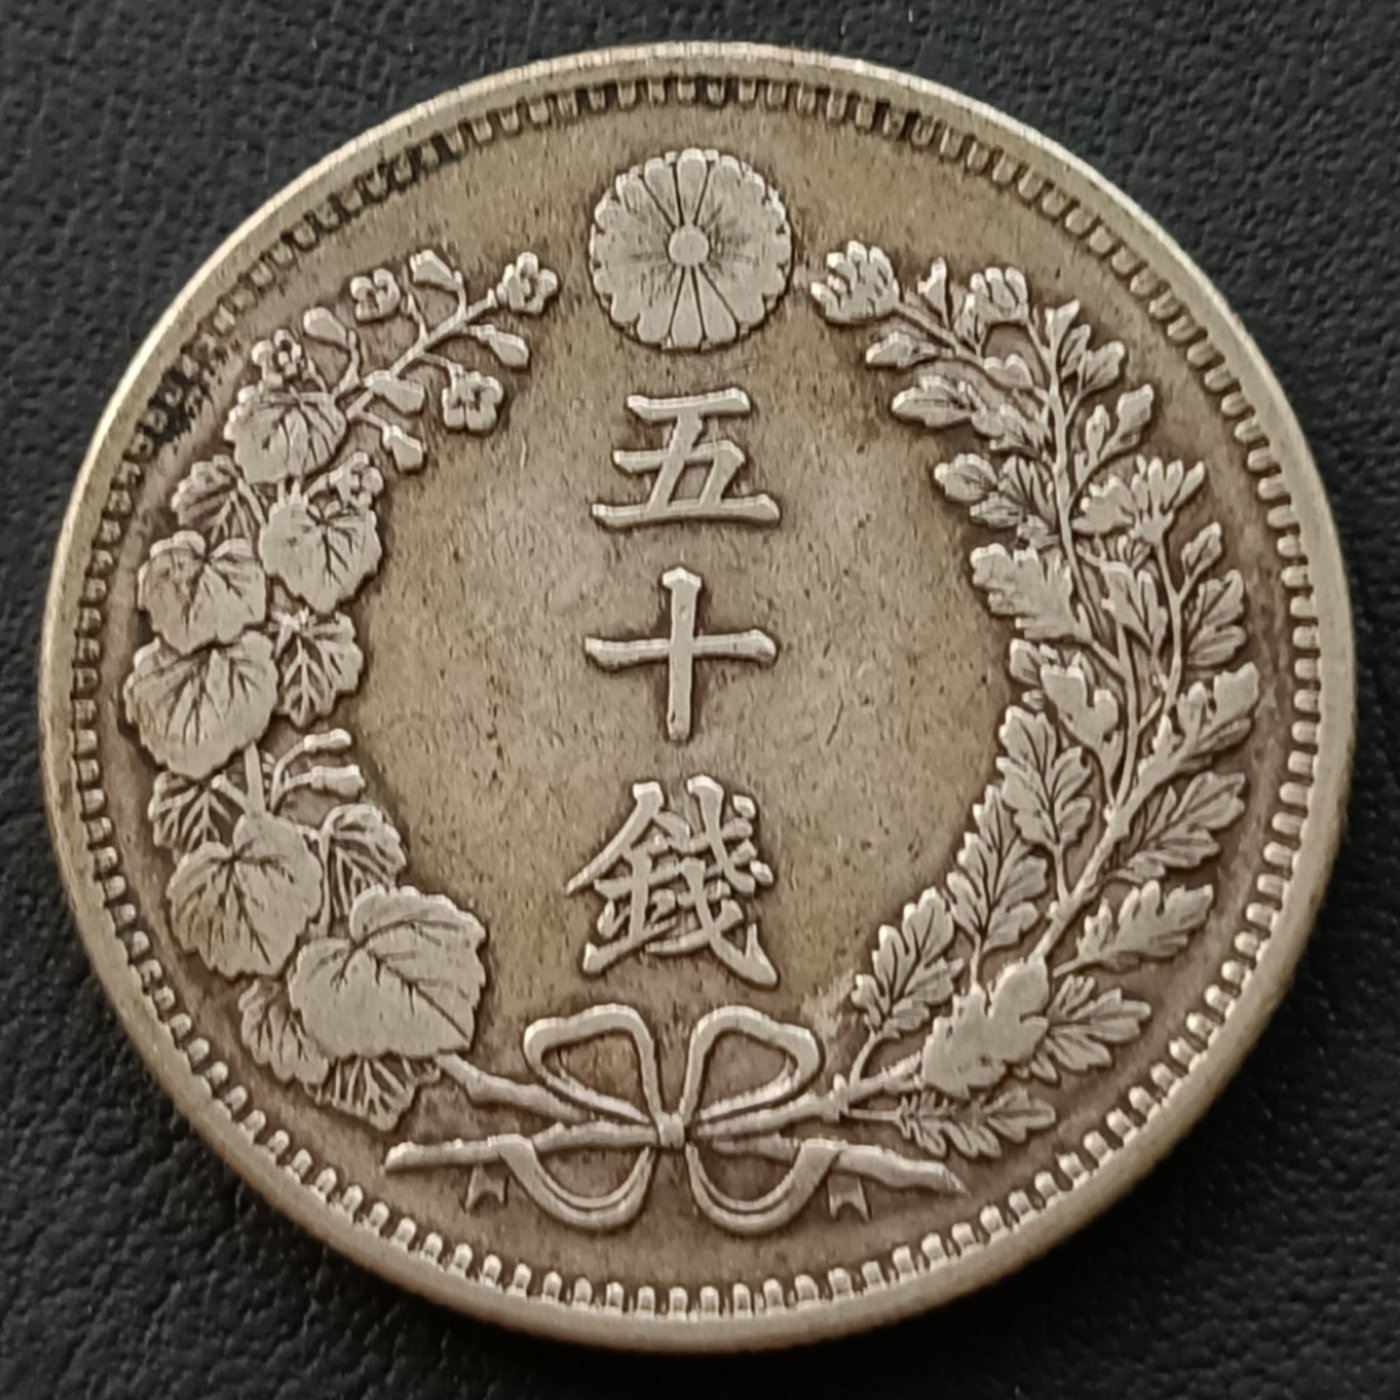 日本龍銀明治三十二年(1899年) 五十錢重13.34克銀幣(80%銀) 1778 